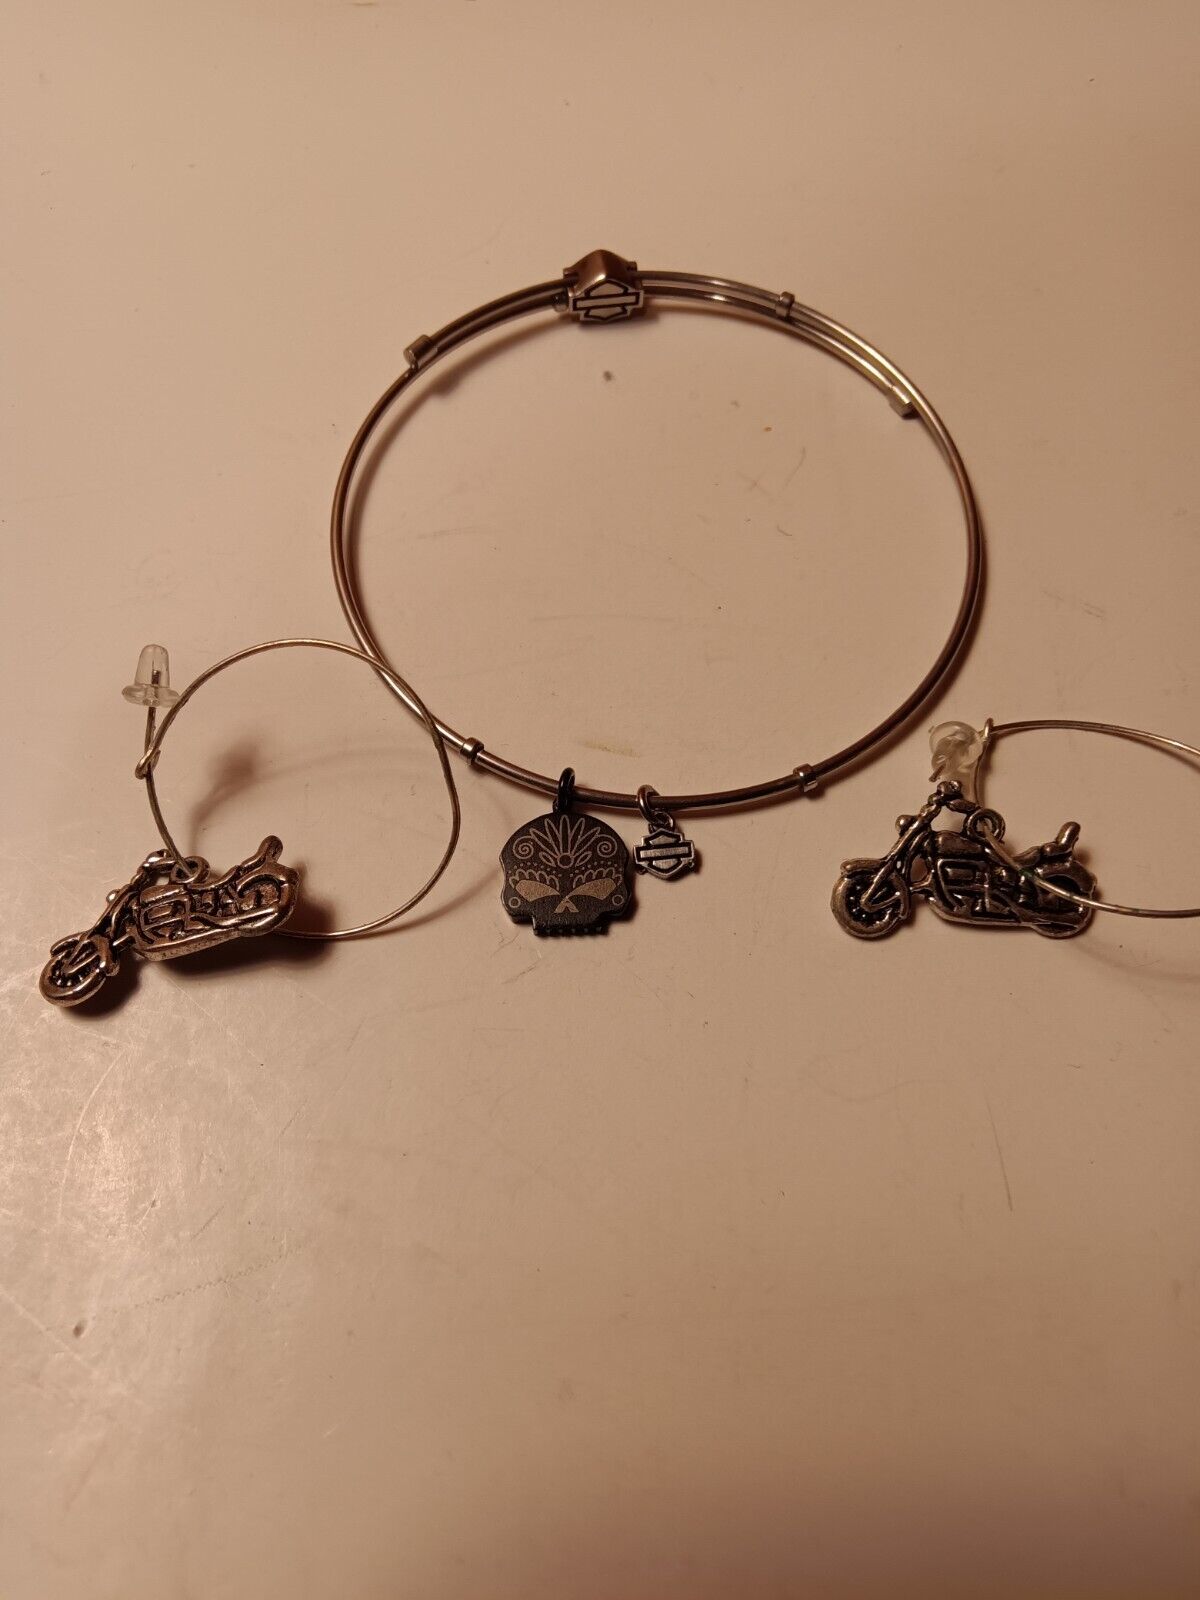 Harley Davidson Bracelet And Motorcycle Earrings